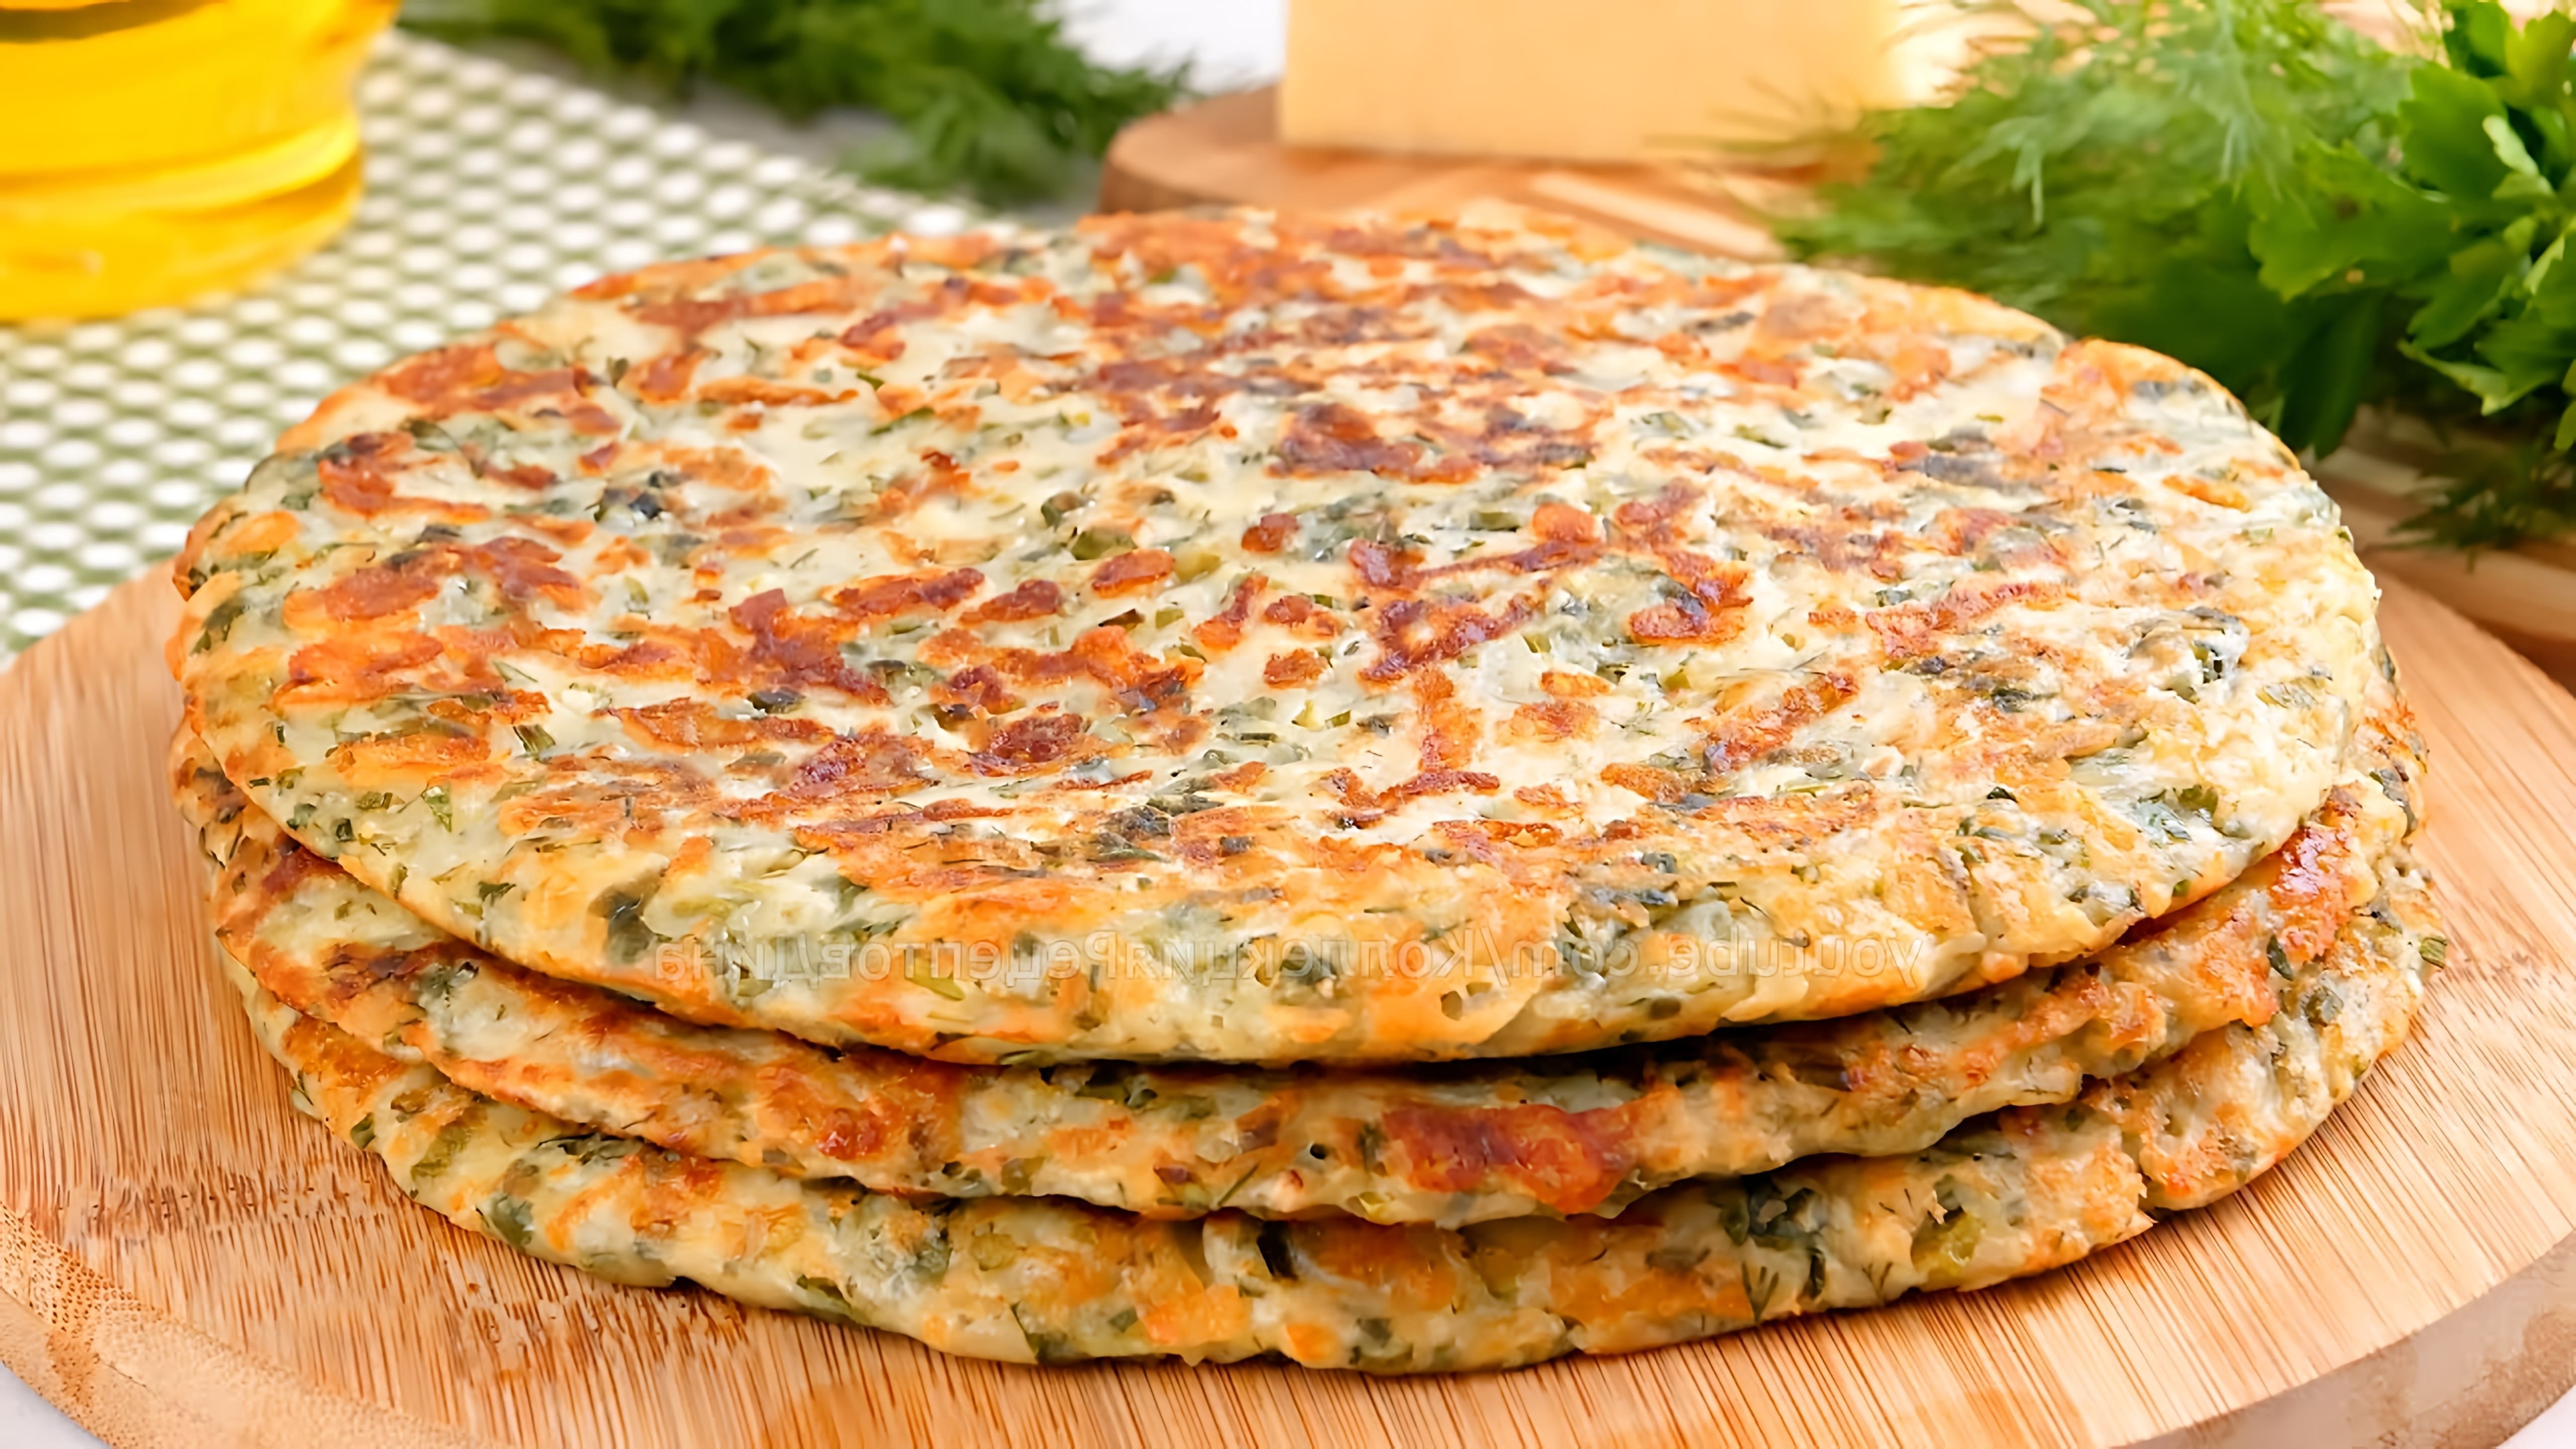 В этом видео демонстрируется рецепт быстрых и бездрожжевых лепешек на кефире с зеленью и сыром